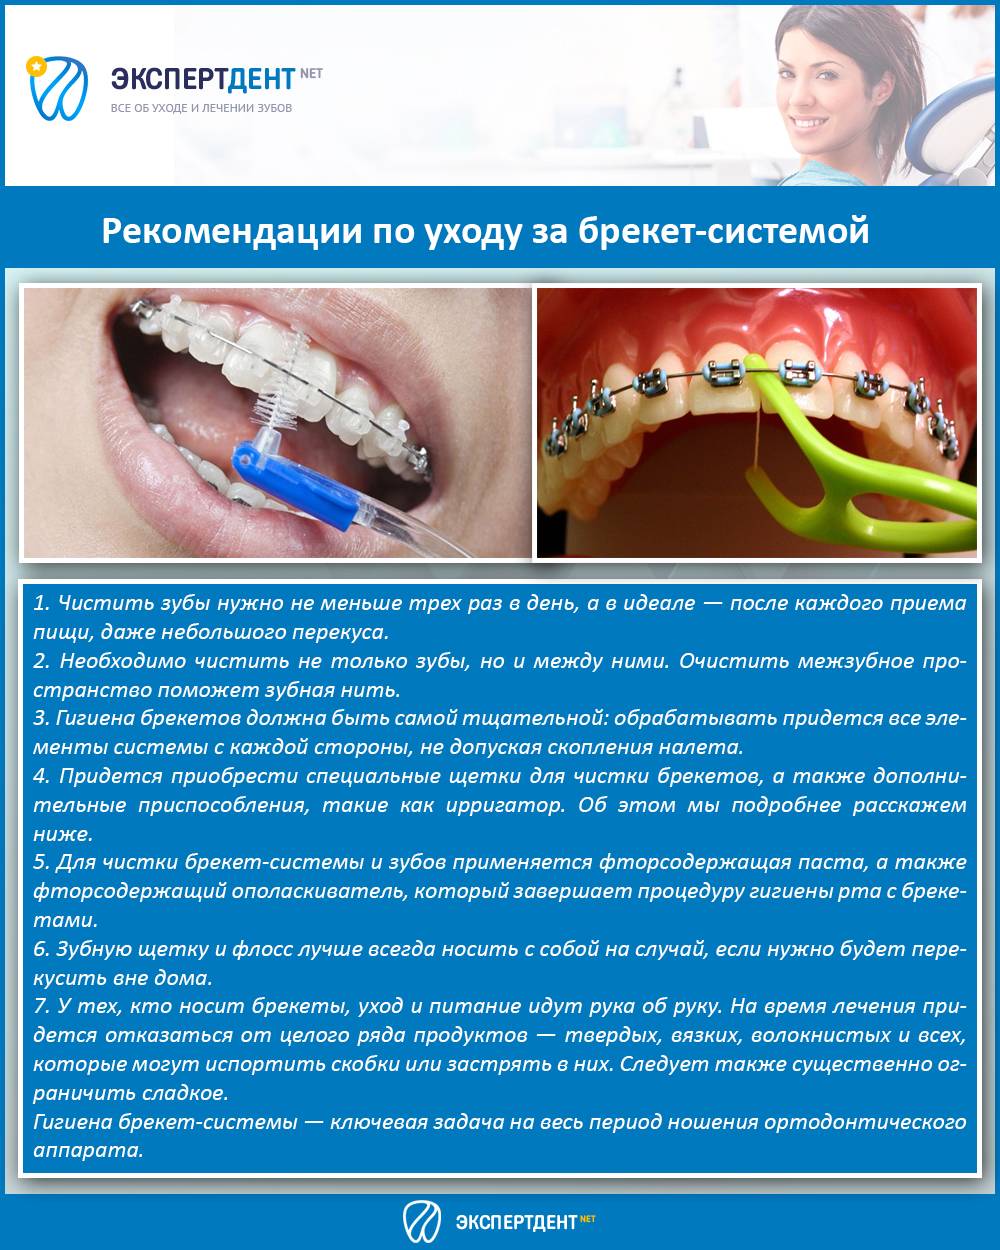 Не есть после установки. Профессиональная гигиена полости рта. Рекомендации по уходу за брекет системой.